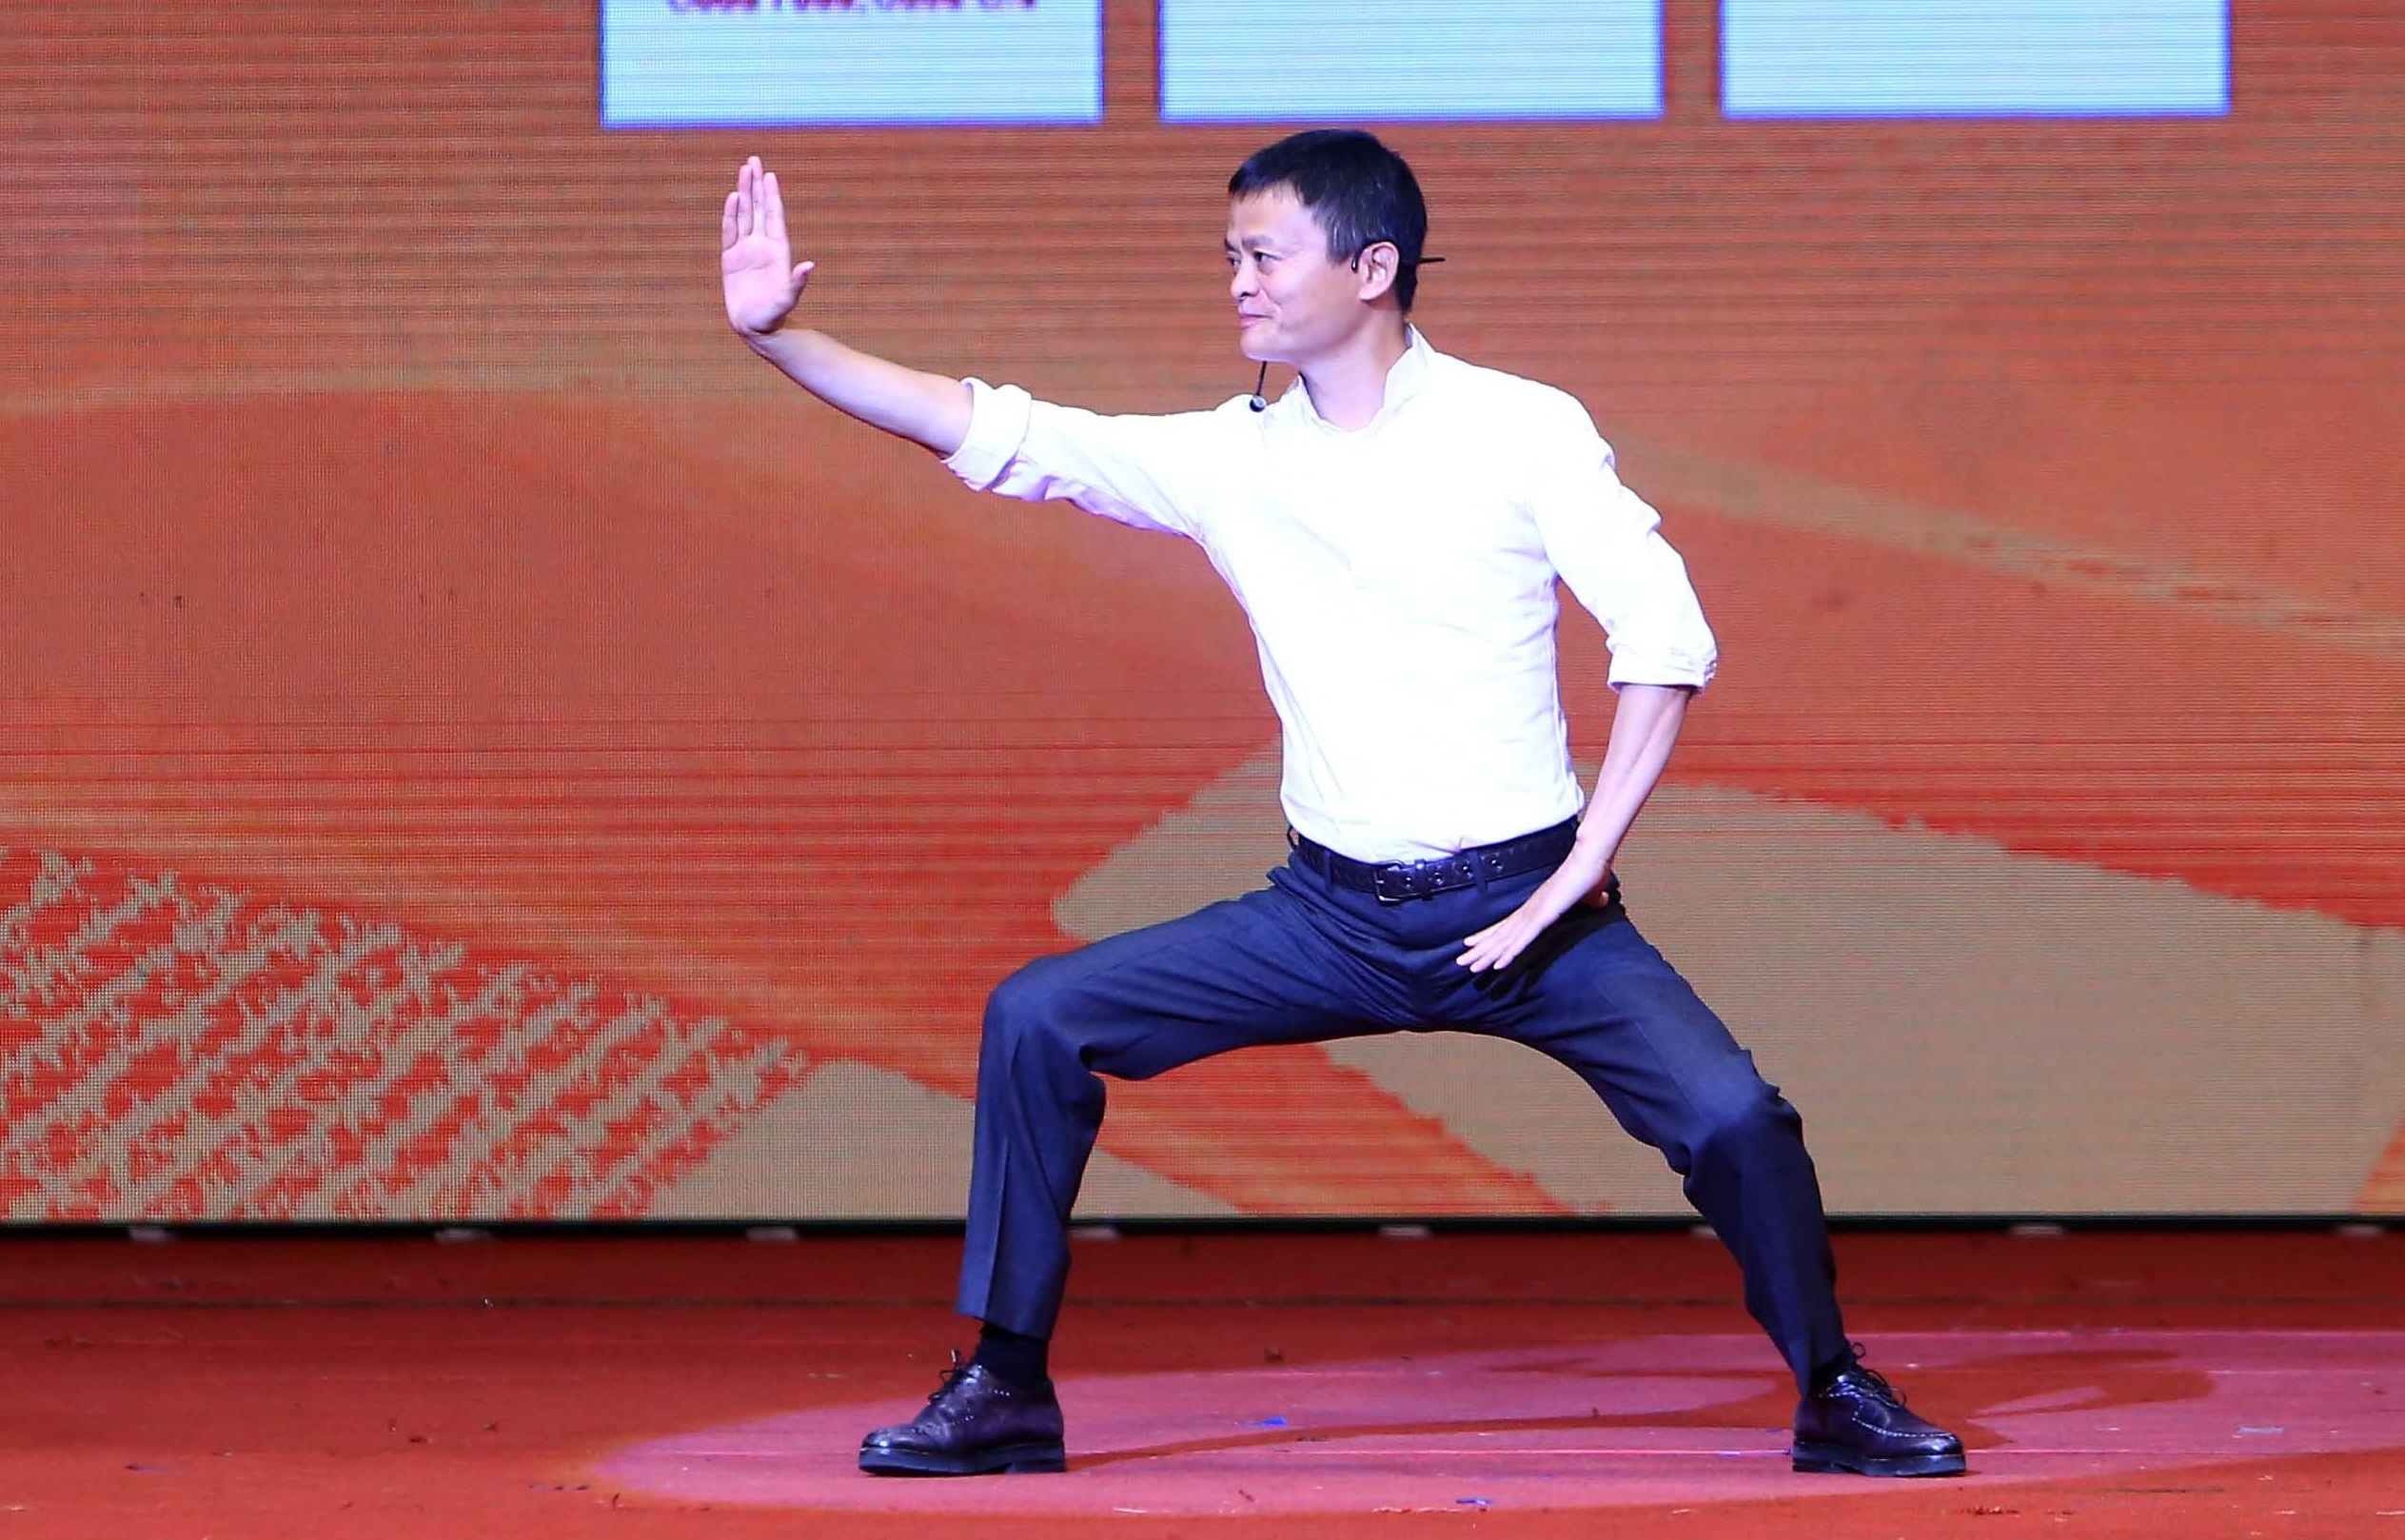 Chủ tịch Alibaba Jack Ma biểu diễn Thái cực quyền trong chuyến công tác tại Việt Nam năm 2017 (Nguồn: TTXVN)